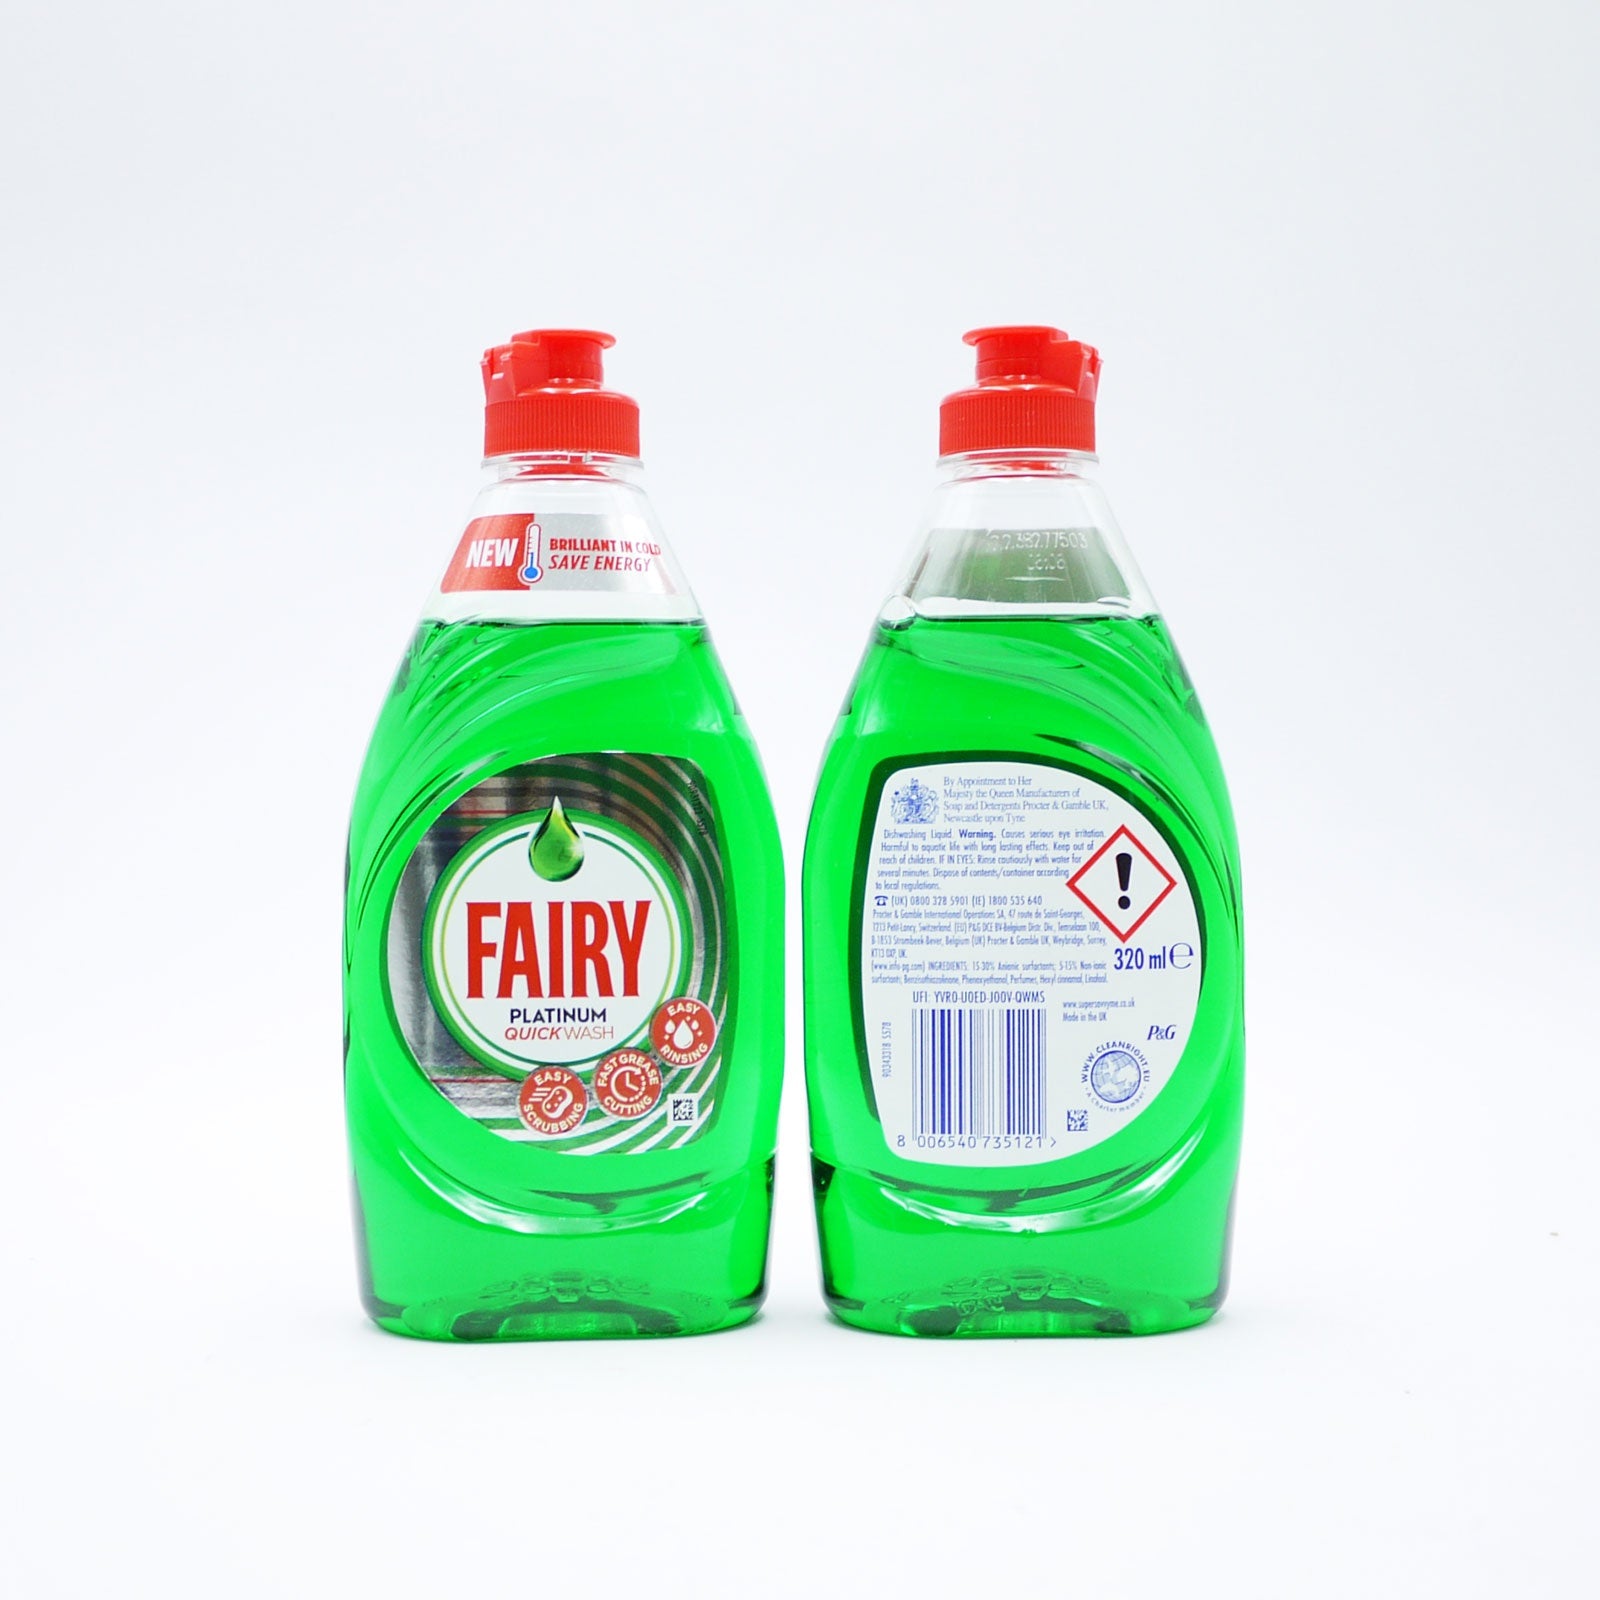 Fairy Washing-up Liquid Platinum Original 320ml*